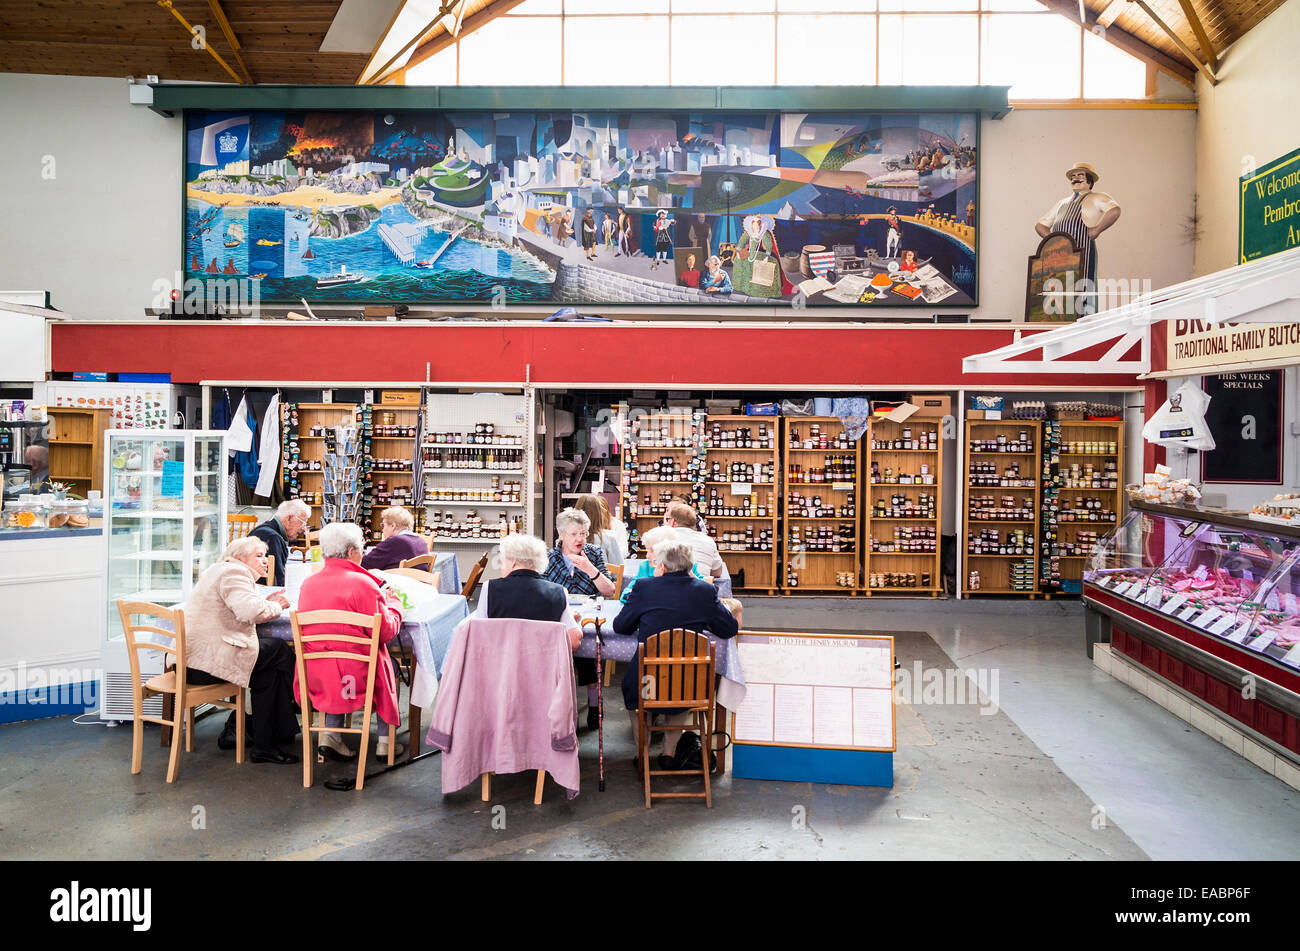 Les touristes âgés profitent d'une pause-rafraîchissement dans le marché intérieur À Tenby, pays de Galles du Sud, Royaume-Uni Banque D'Images